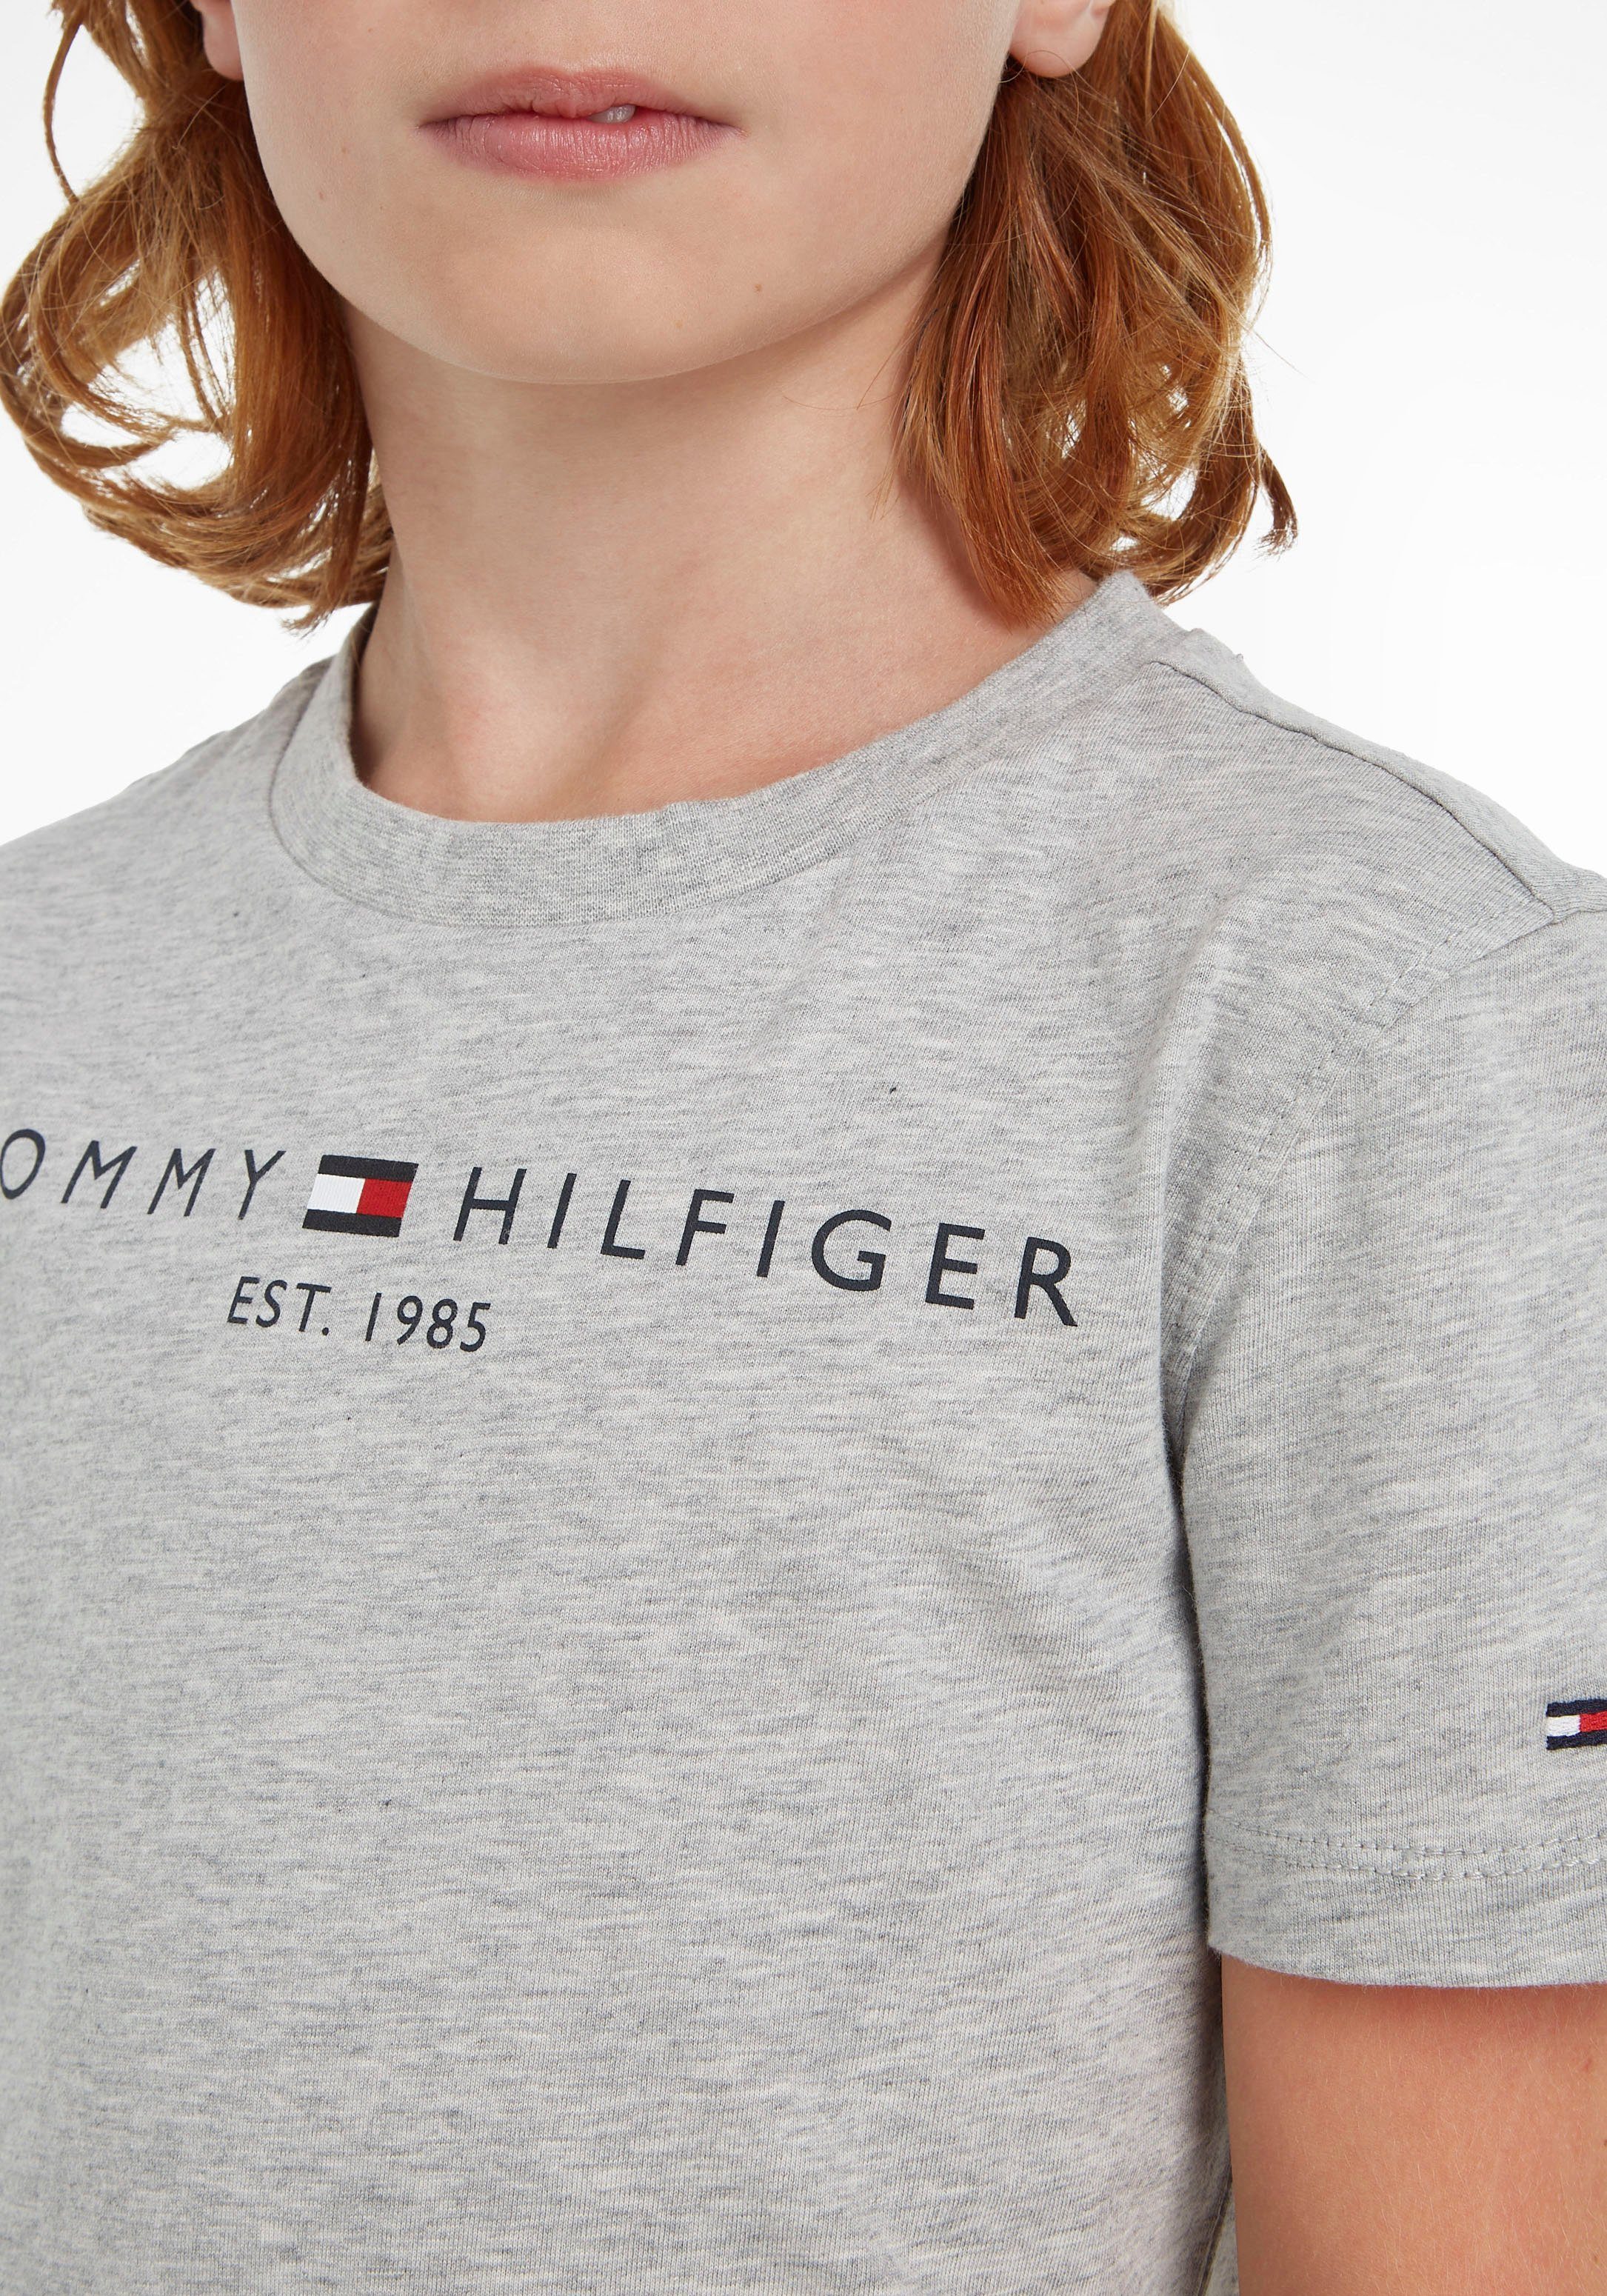 ESSENTIAL TEE und T-Shirt Junior Hilfiger Tommy Kids MiniMe,für Kinder Jungen Mädchen